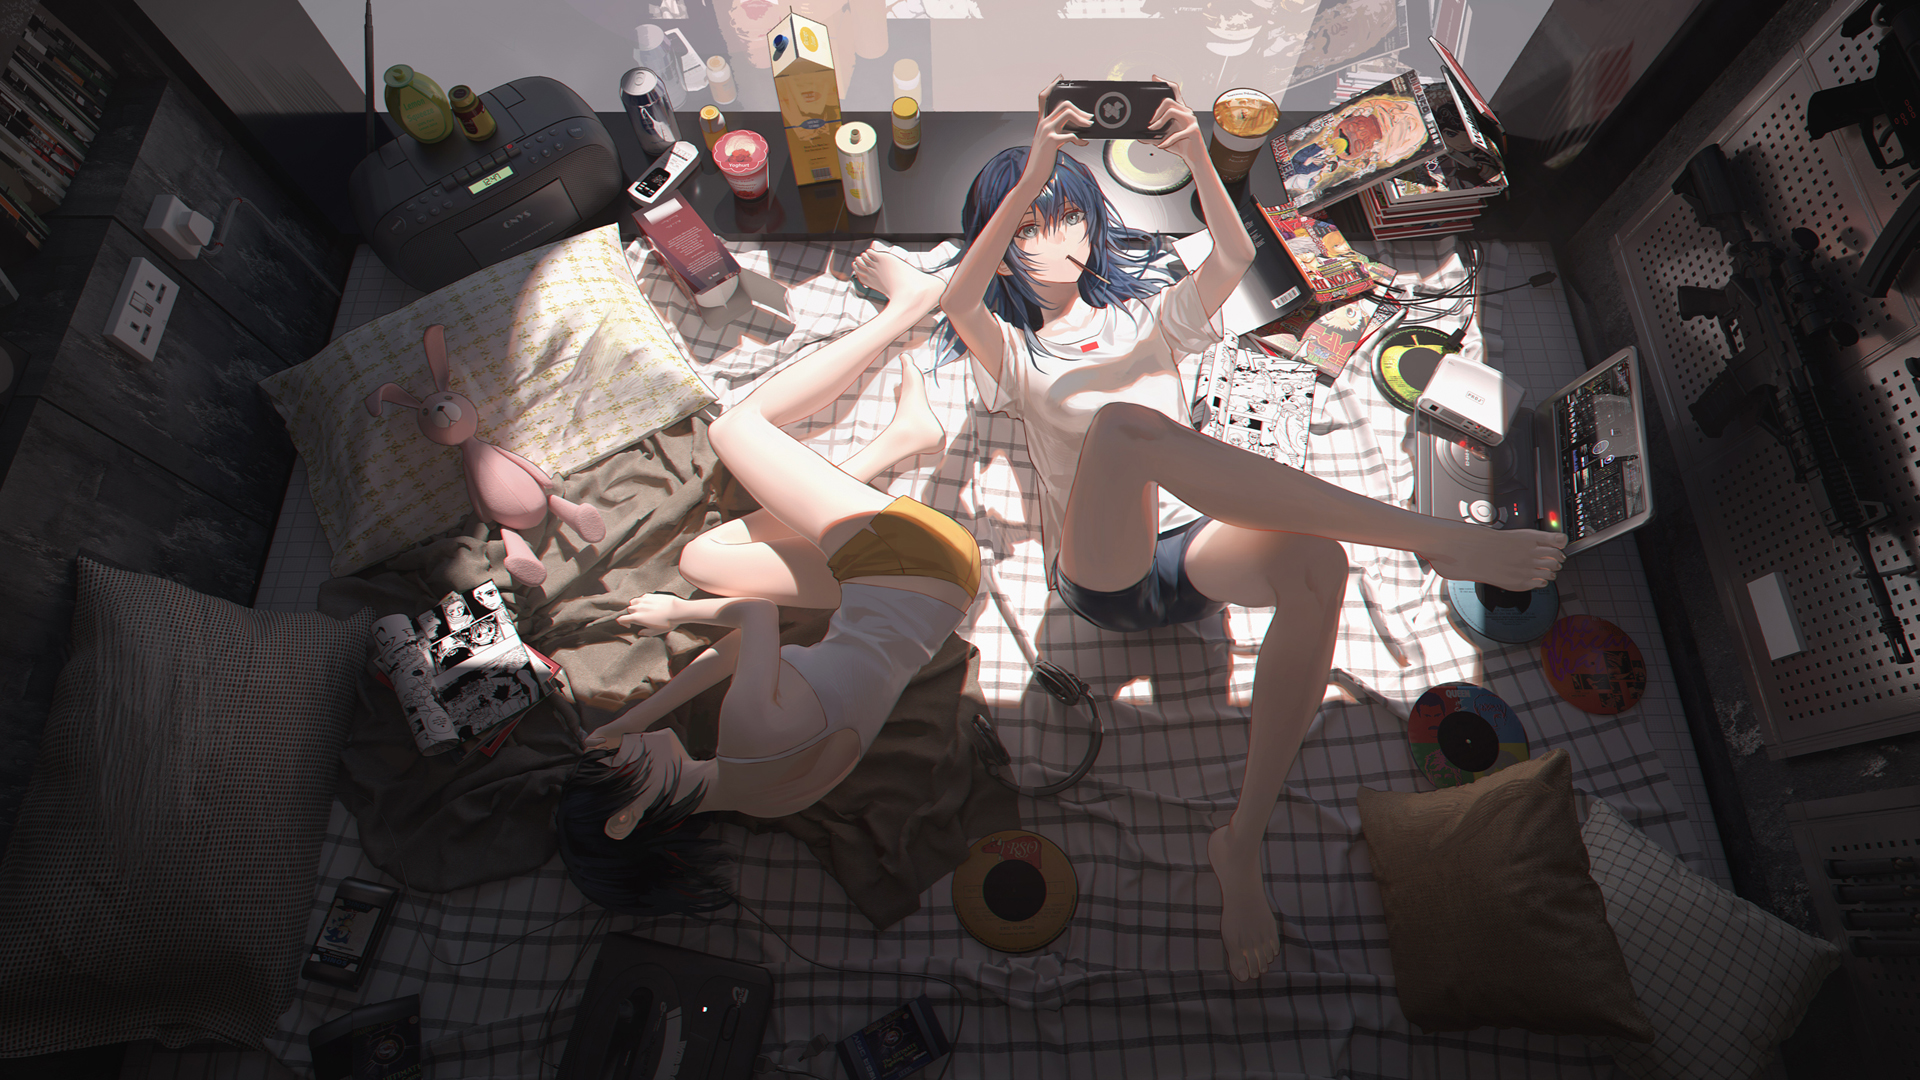 Anime 1920x1080 anime bedroom PSP short shorts messy anime girls artwork Homutan